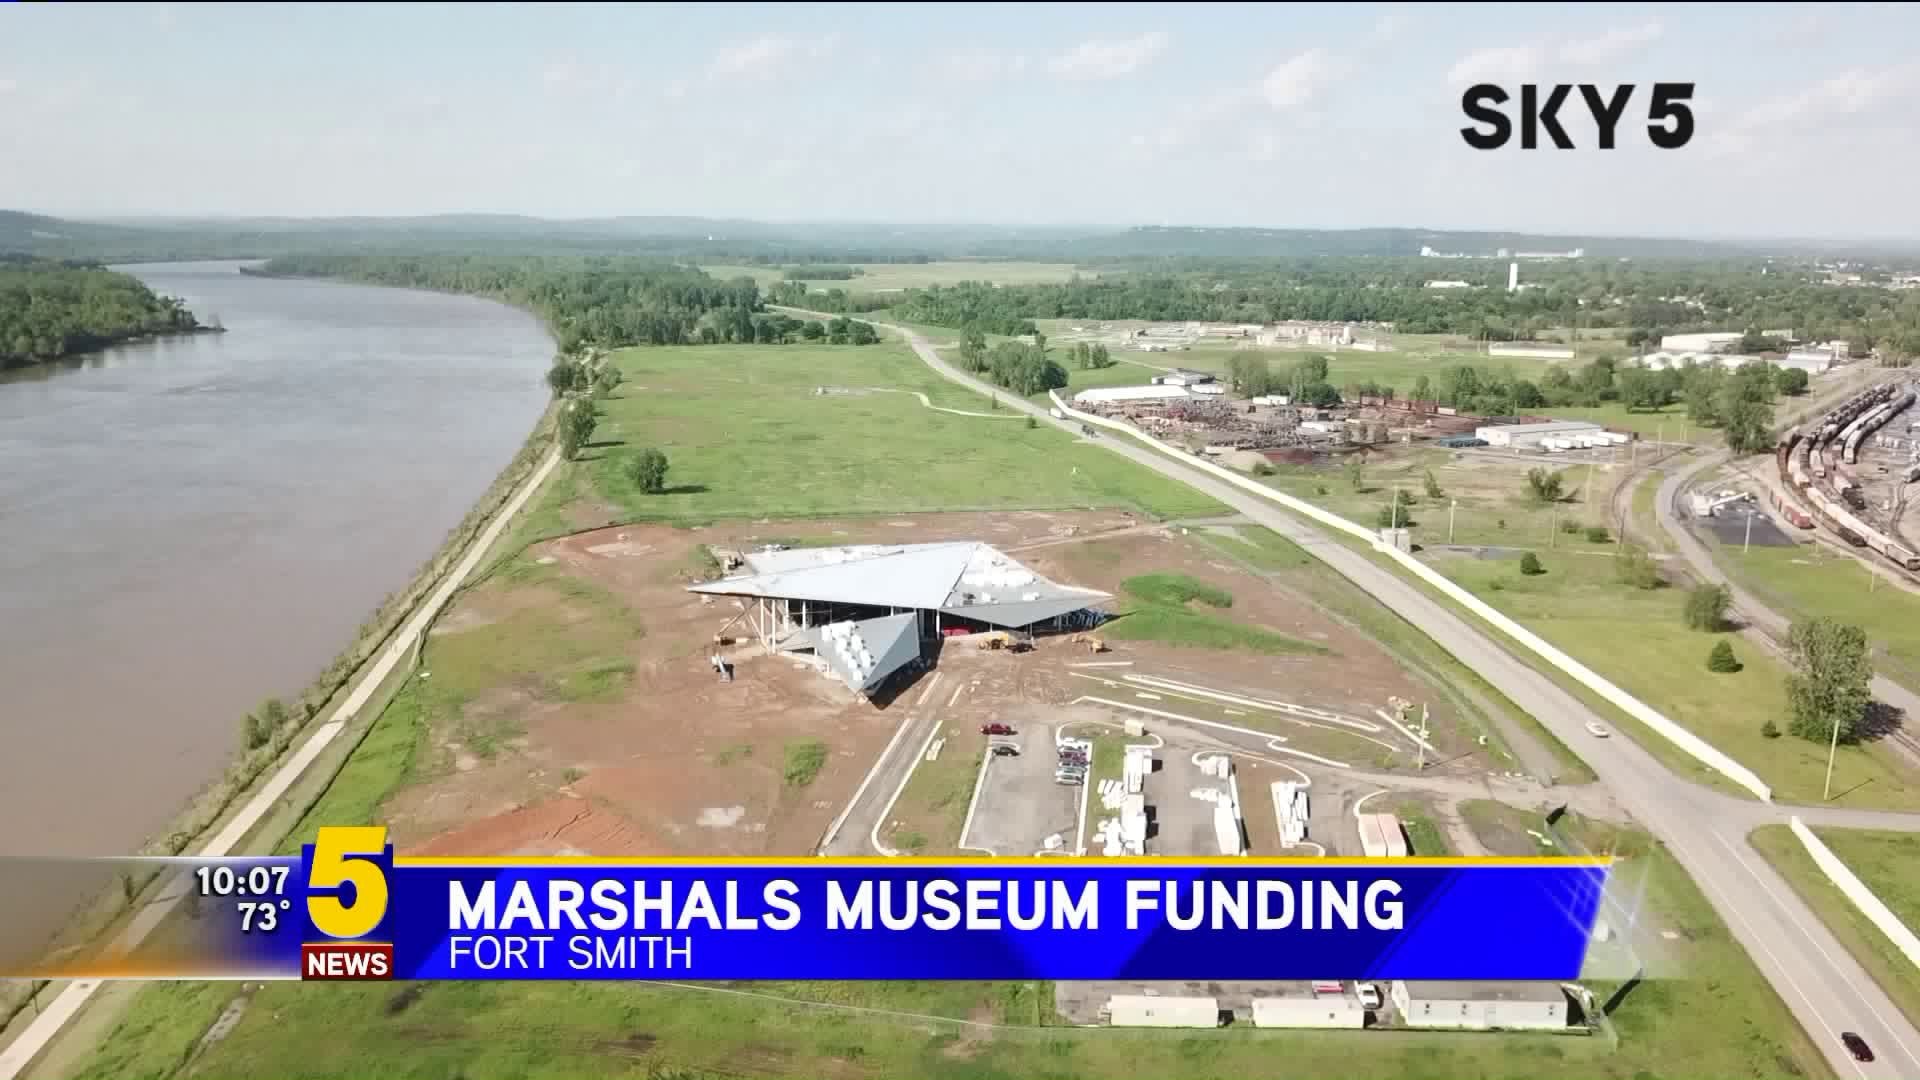 Marshals Museum Funding